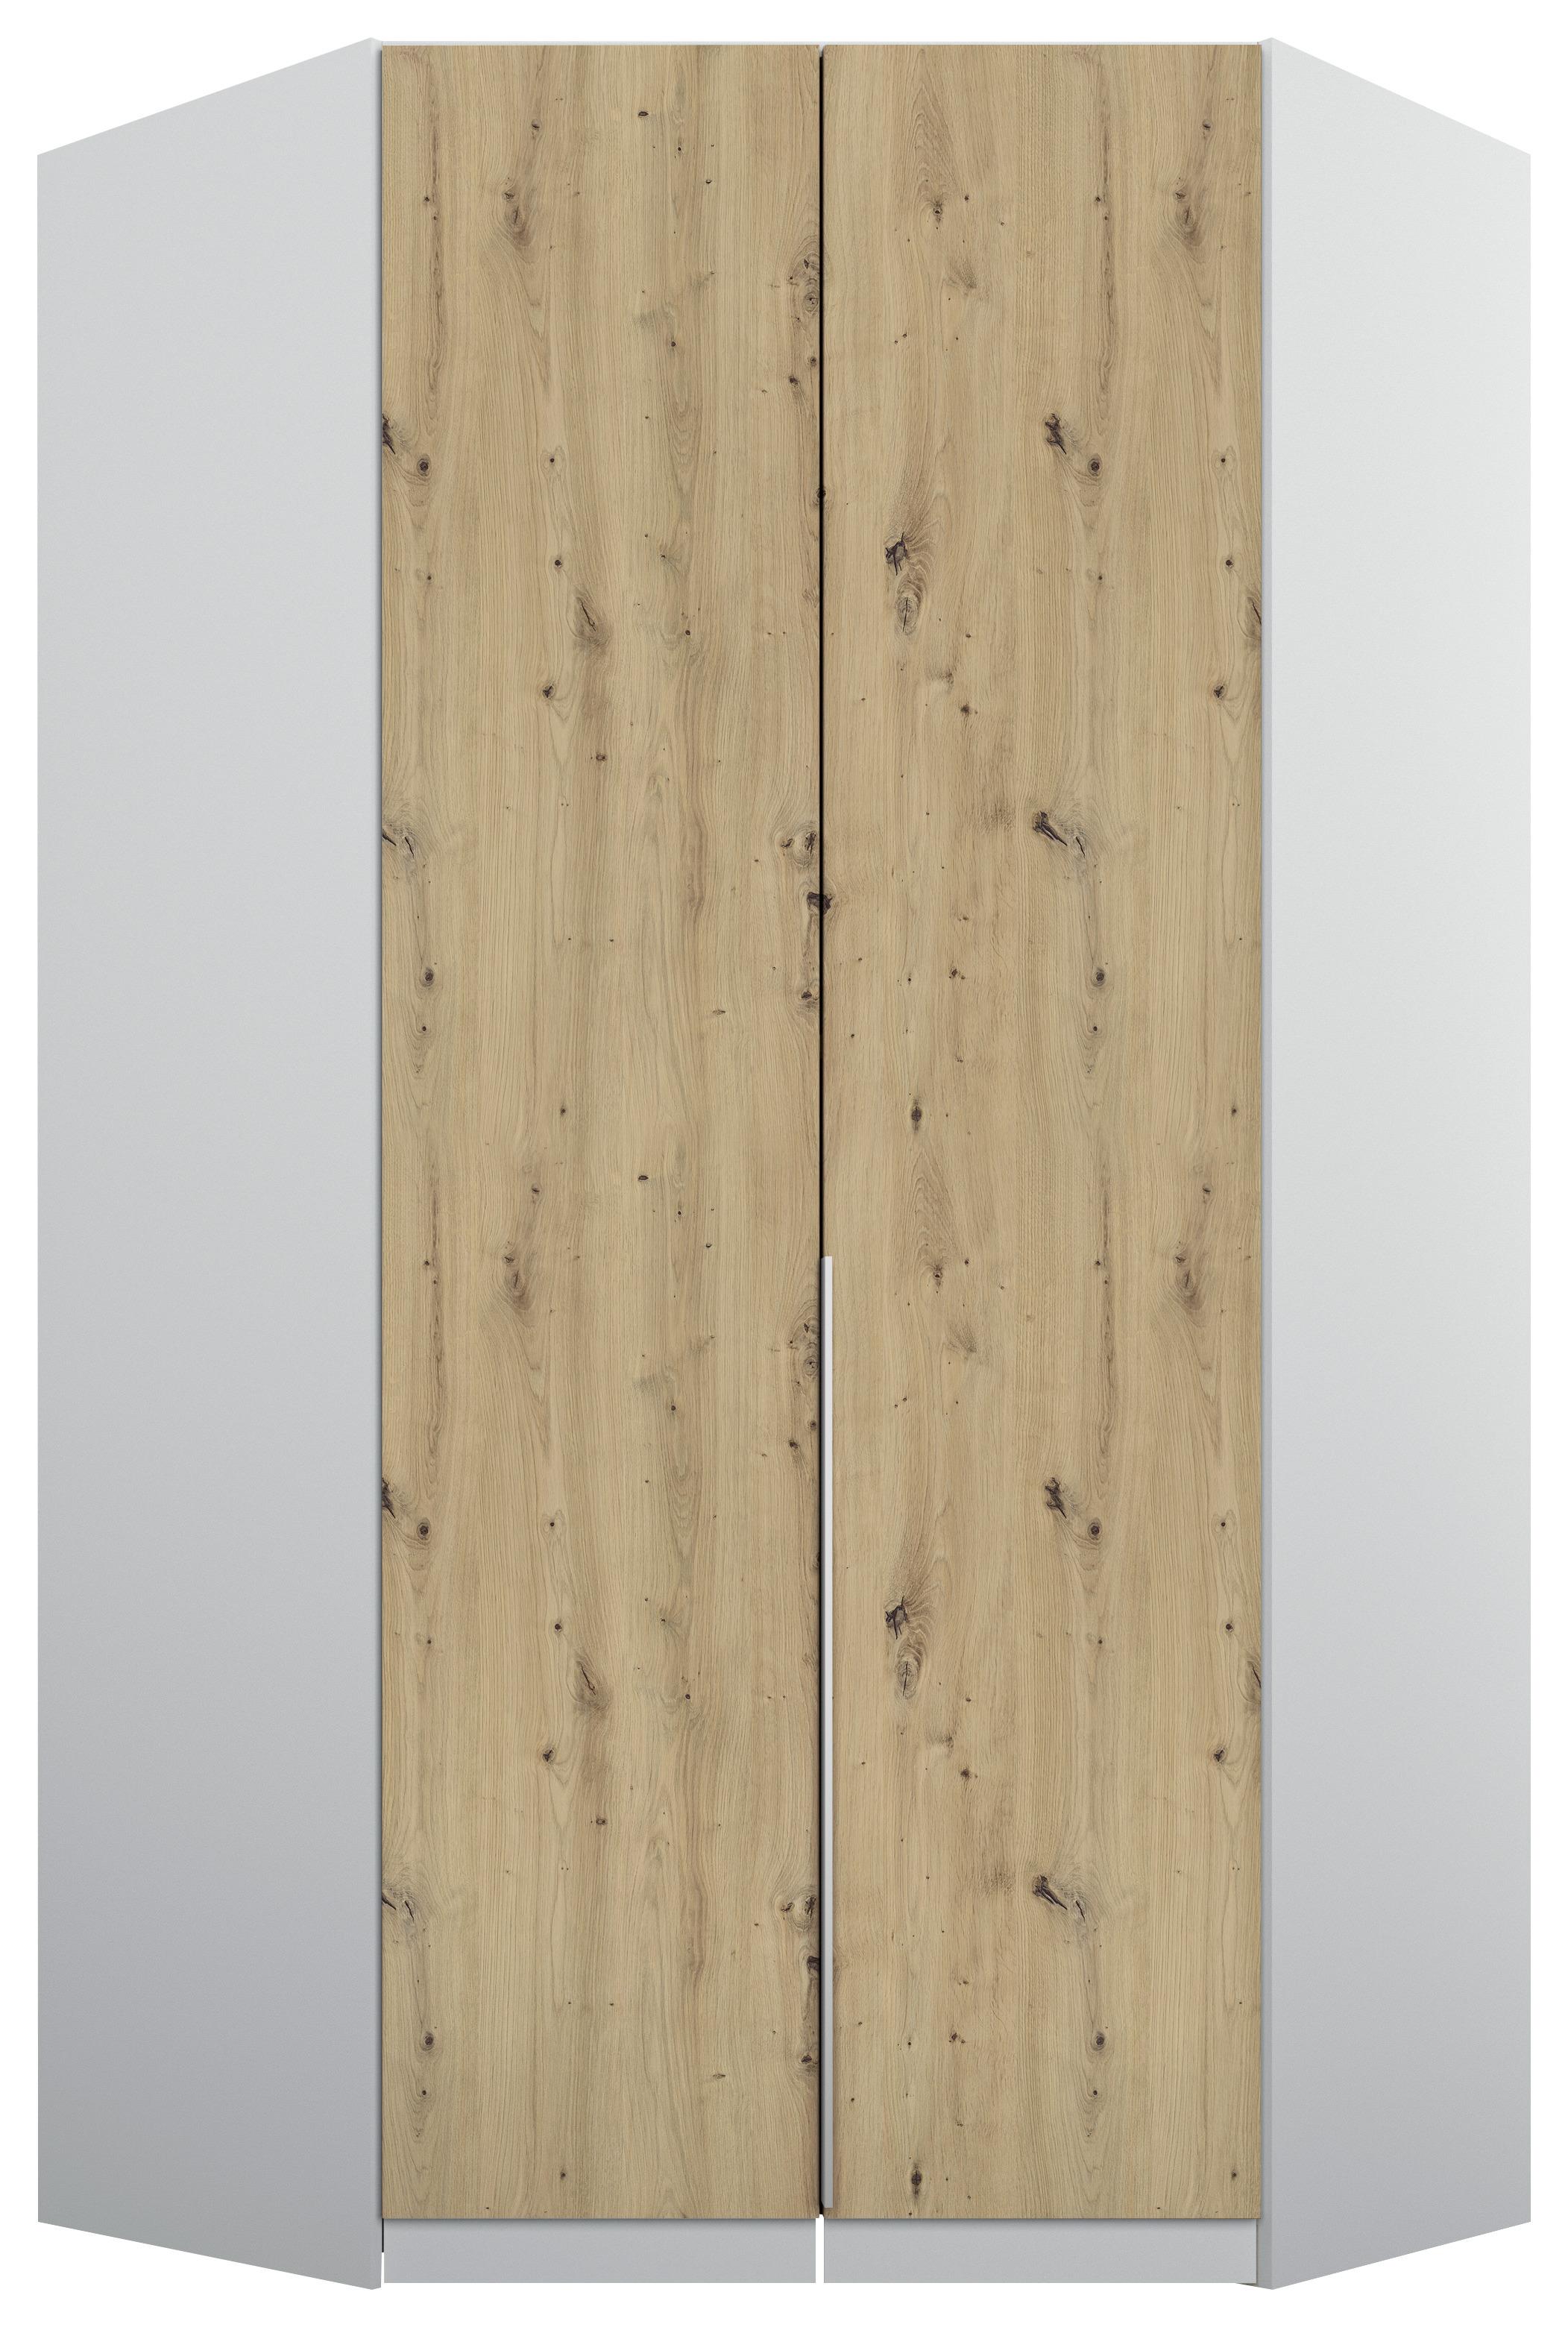 Rohová Šatní Skříň Alabama - světle šedá/barvy hliníku, Moderní, kompozitní dřevo (117/229/117cm)